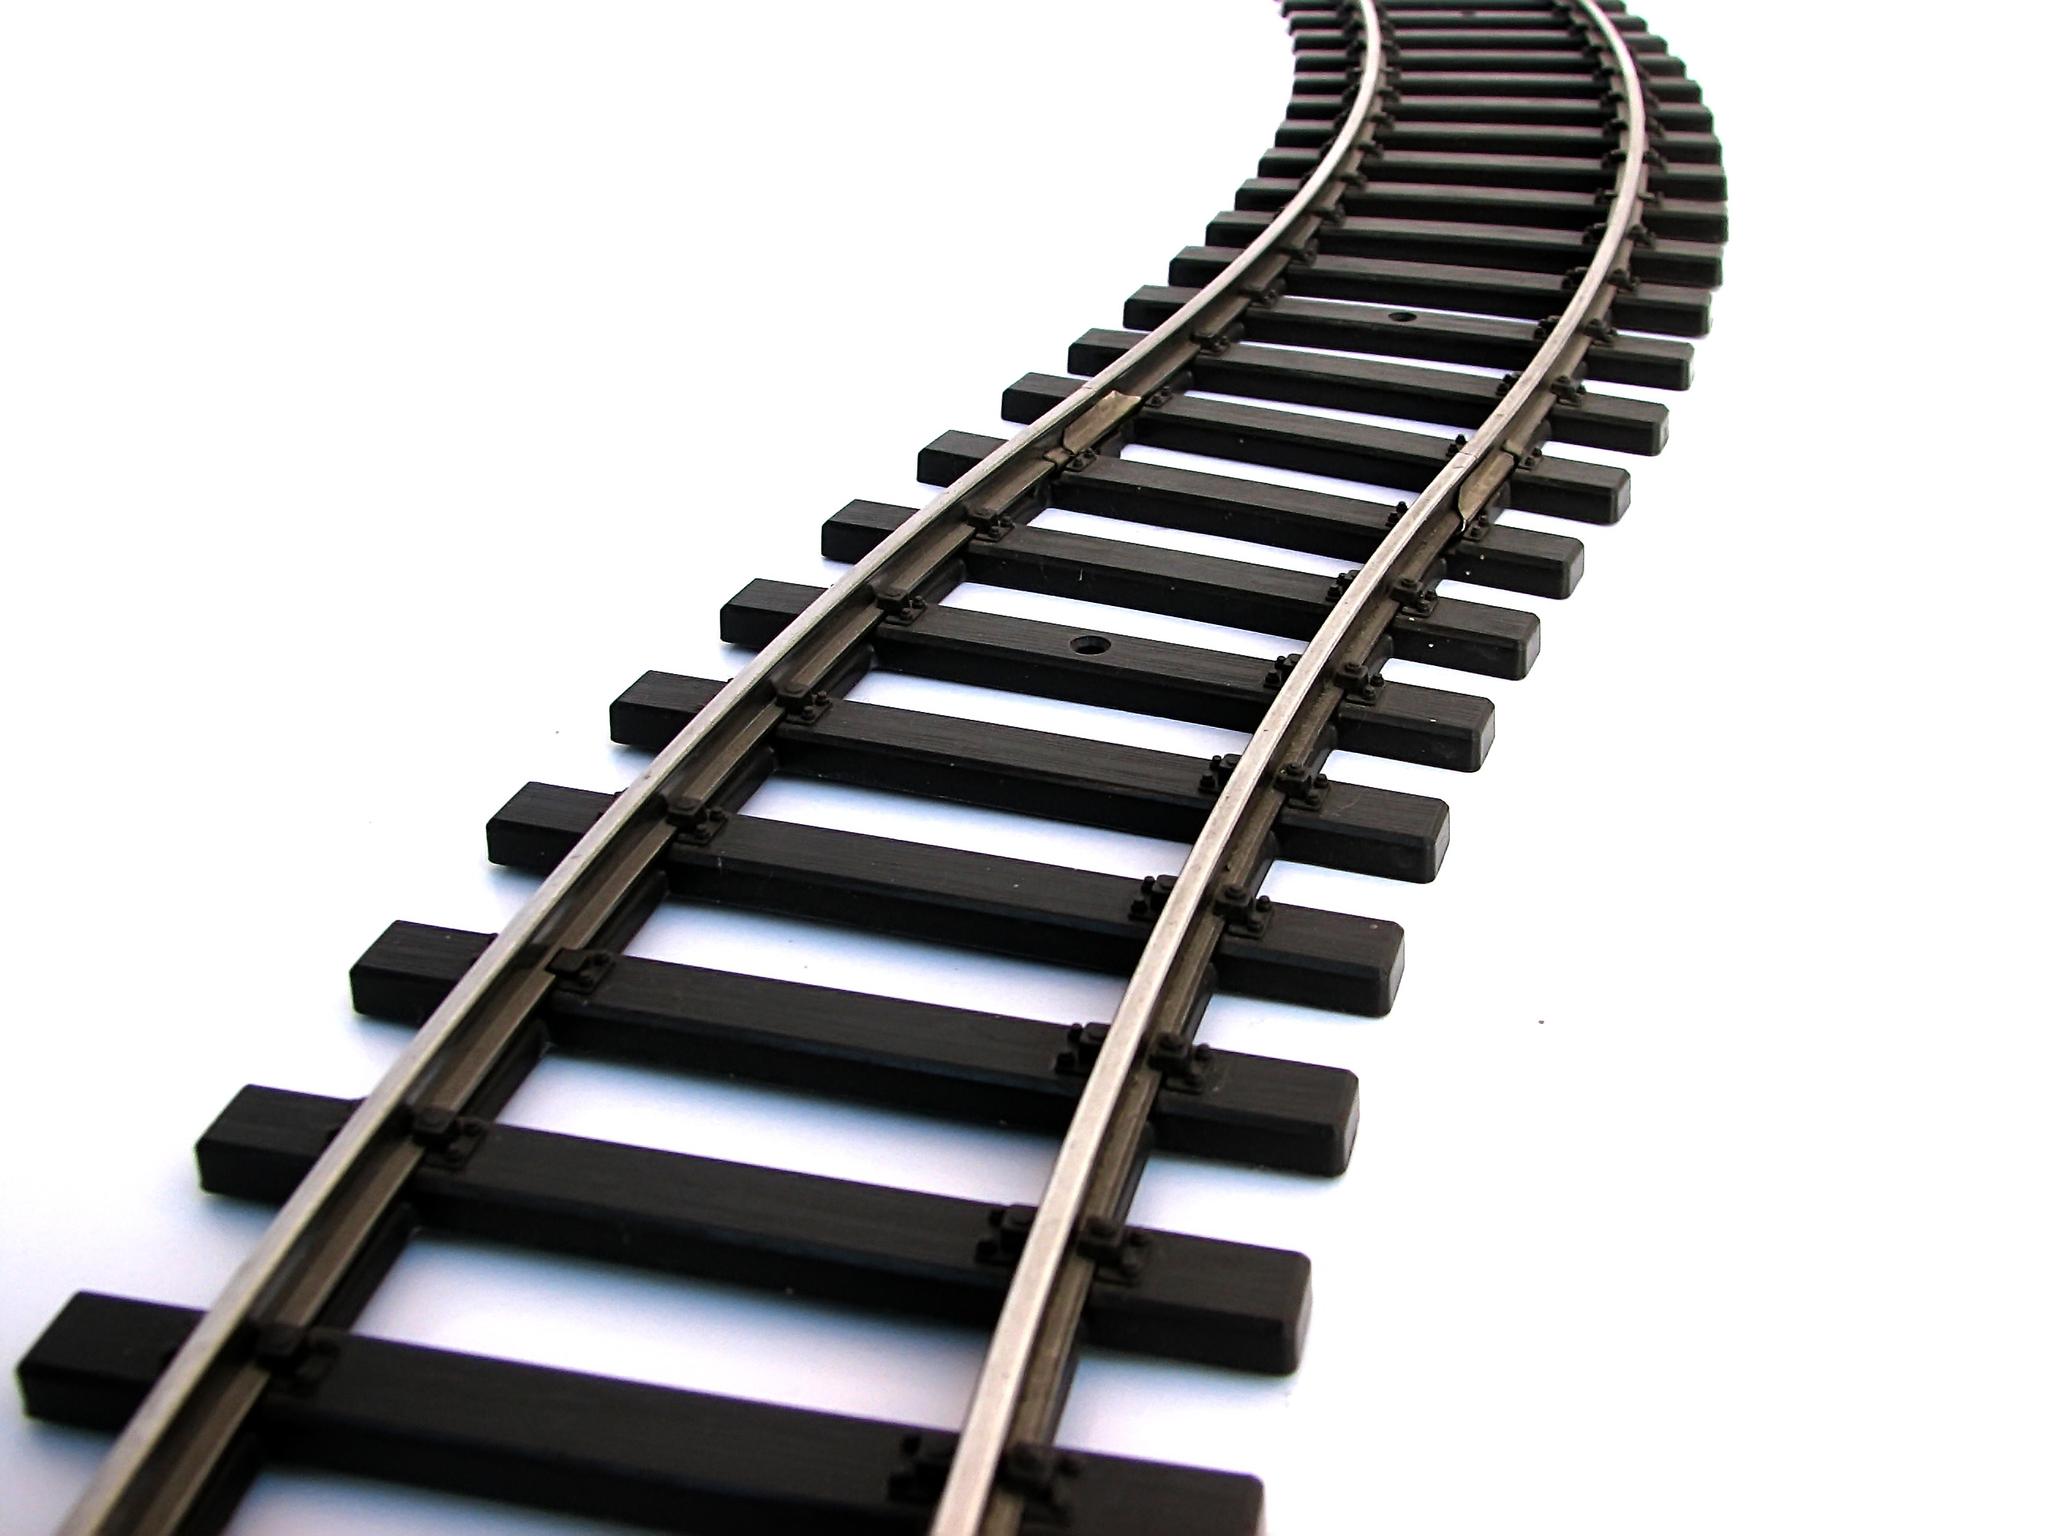 Train Track Clipart. Railroad - Train Track Clipart